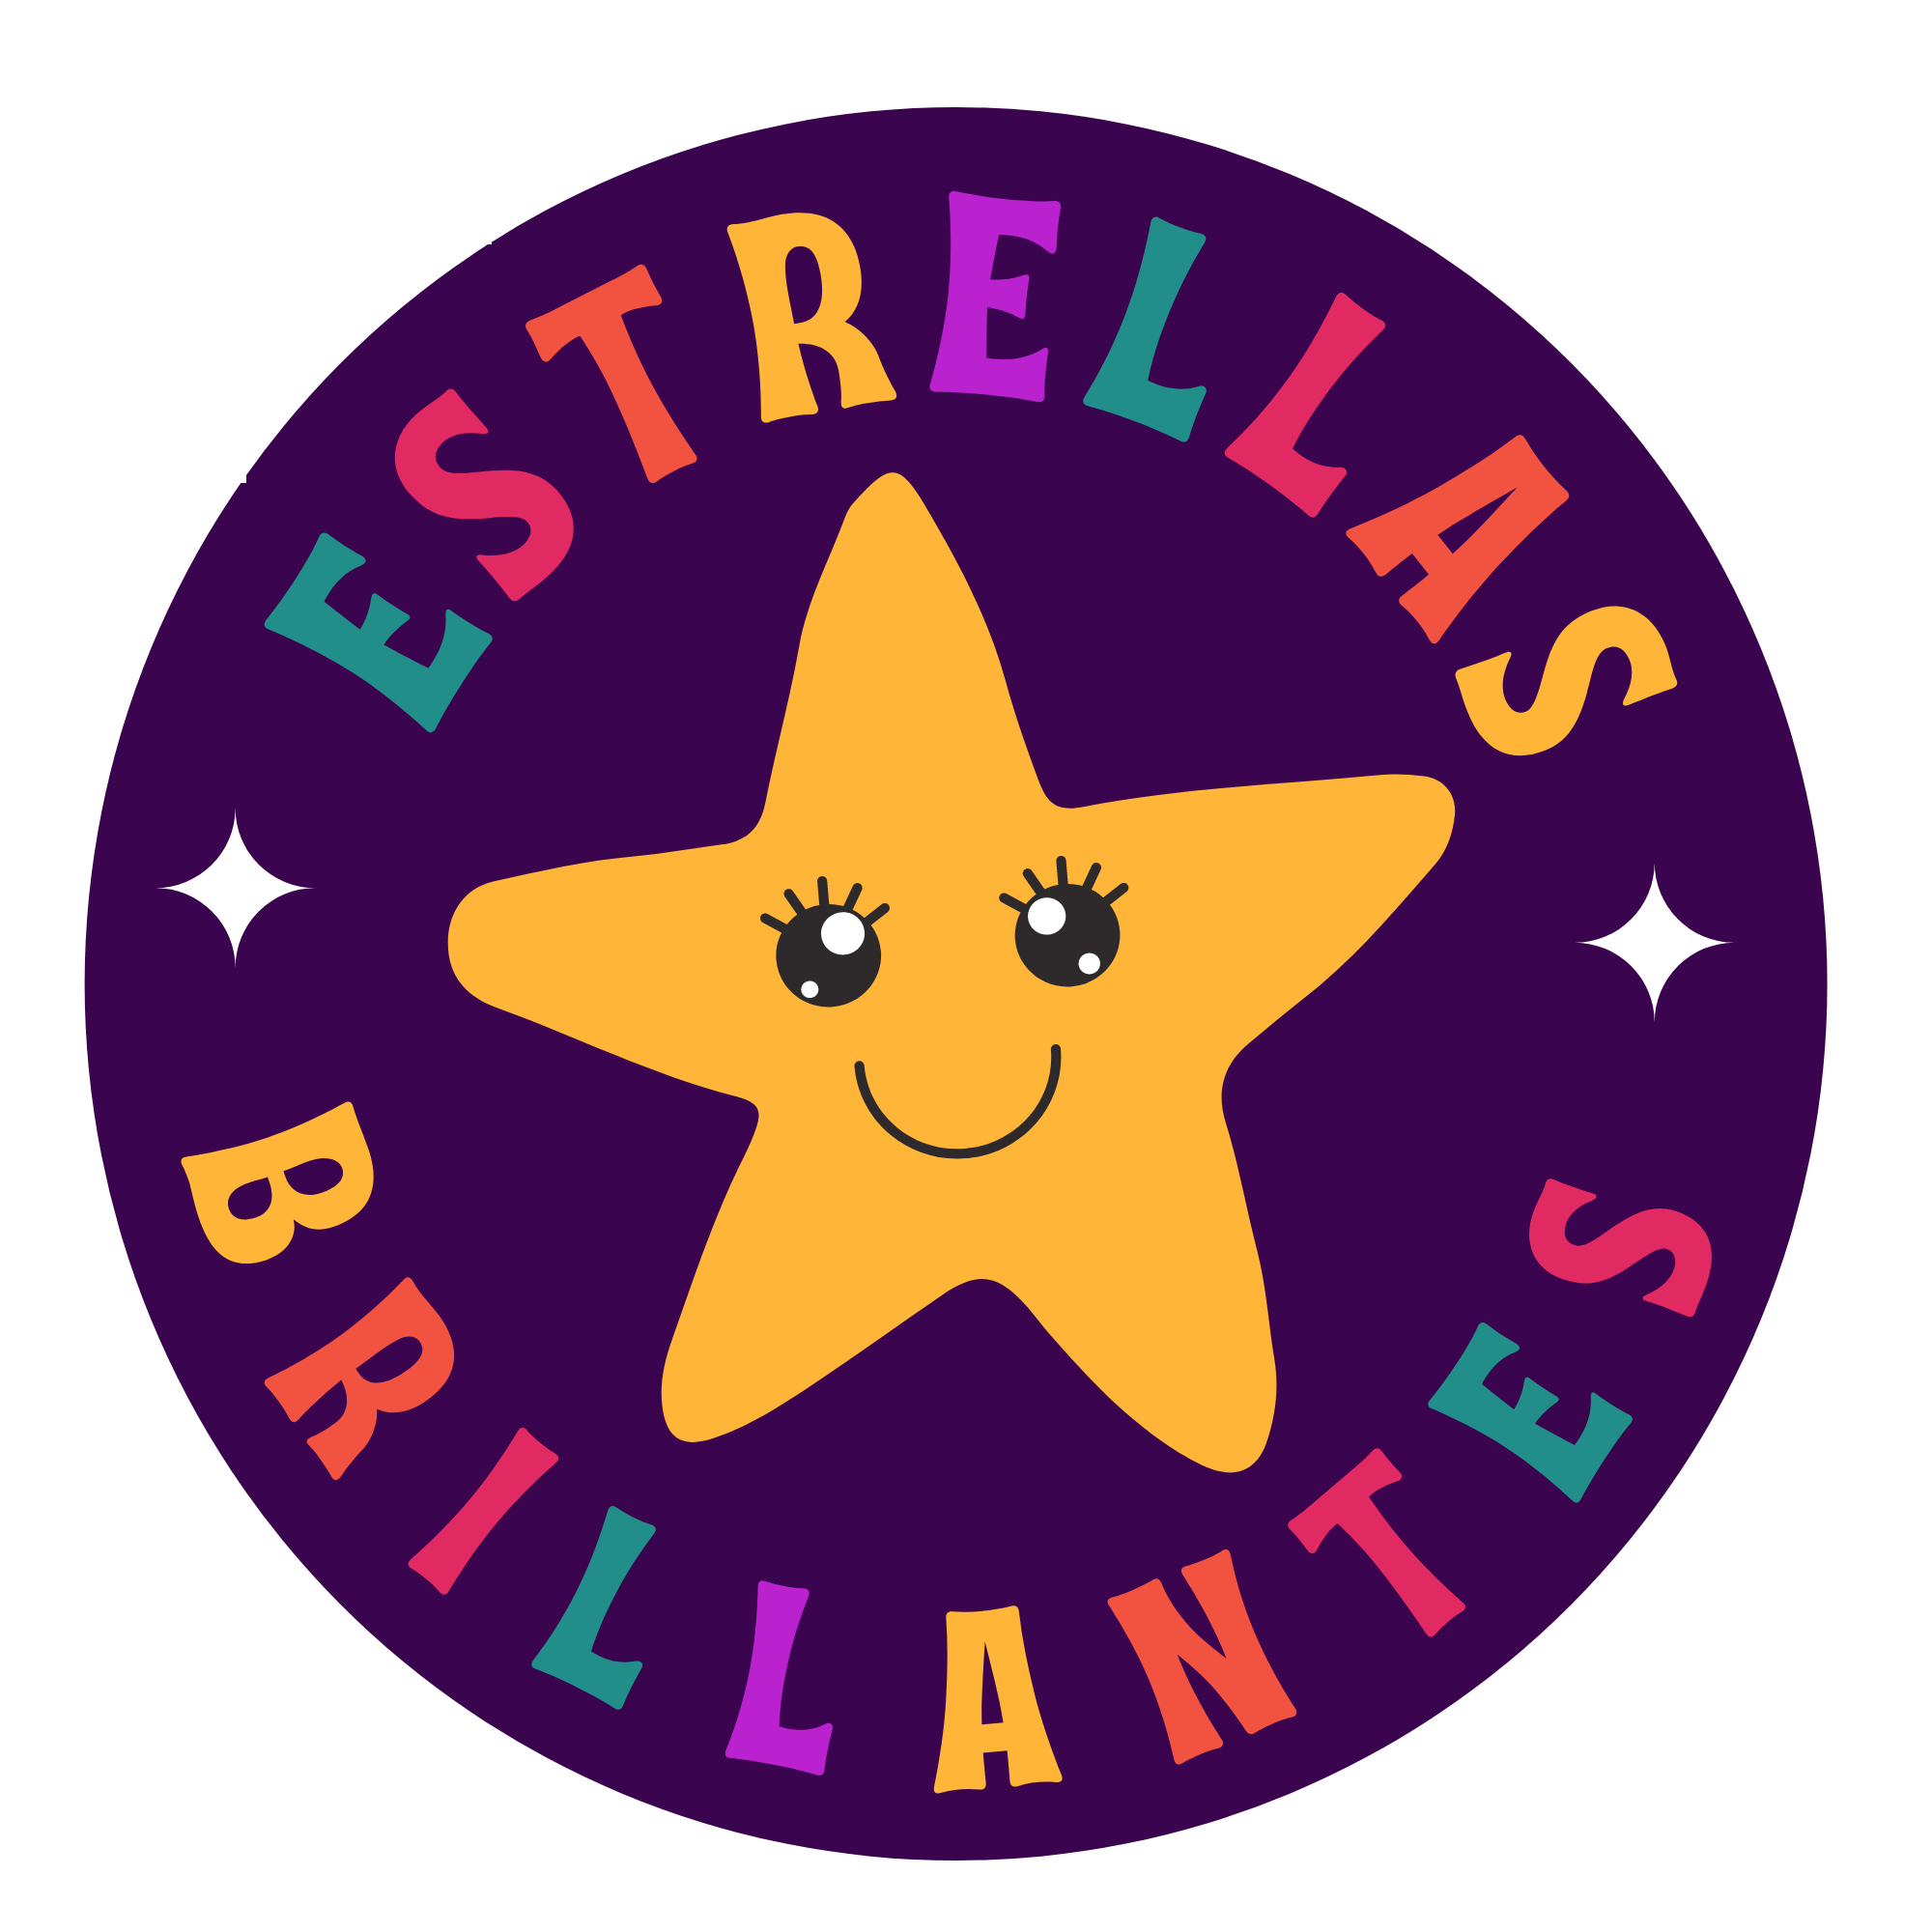 Estrellas Brillantes's logo